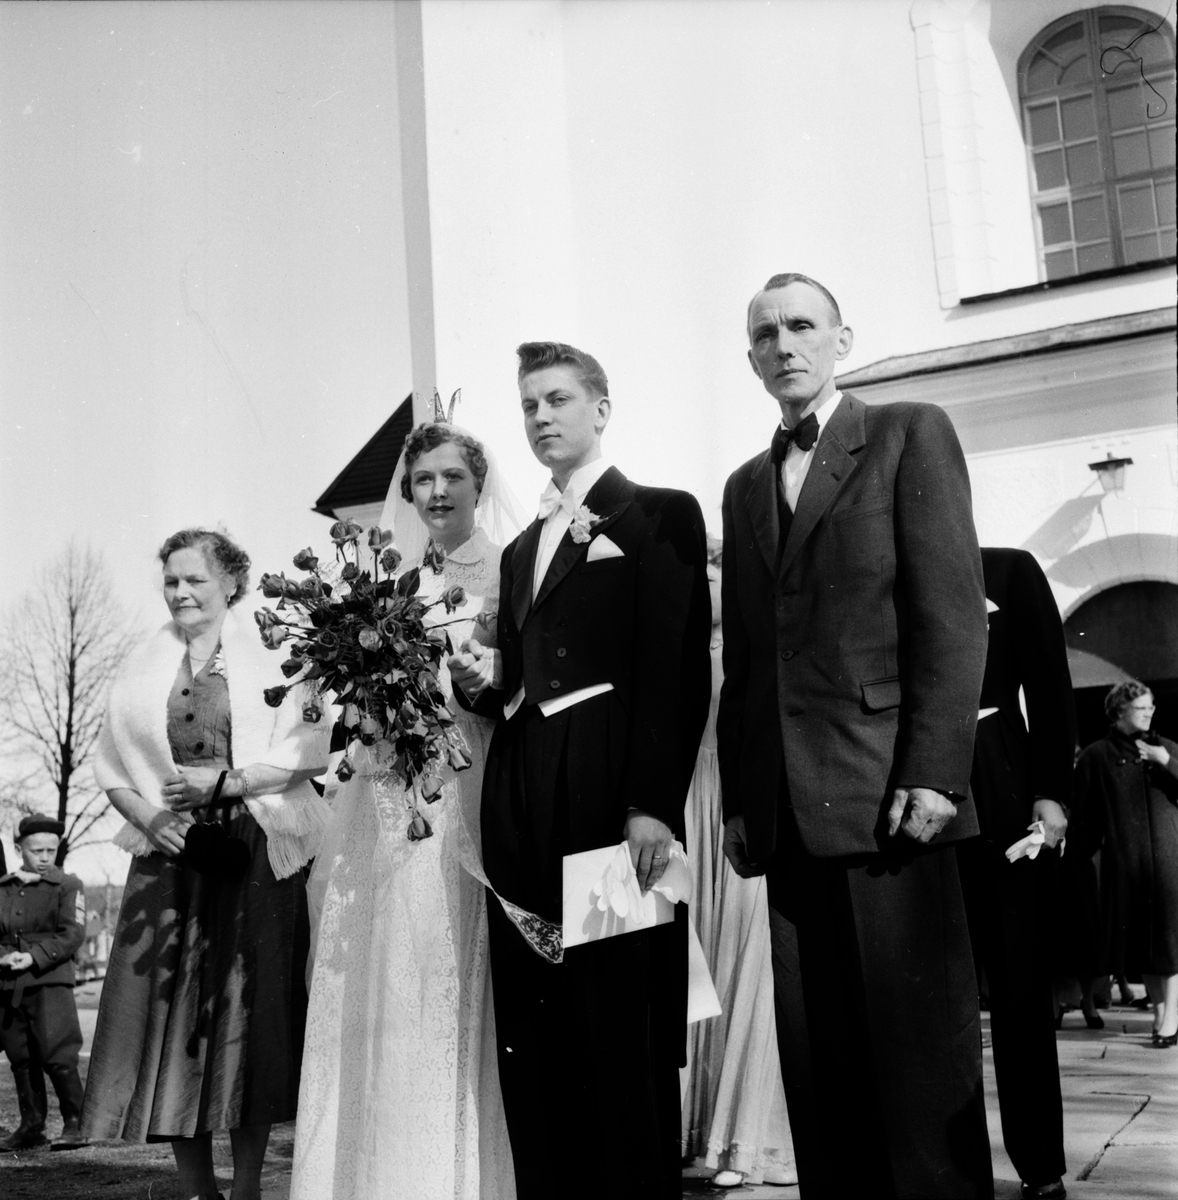 Skogens. Påskbröllop i Växbo. 1955